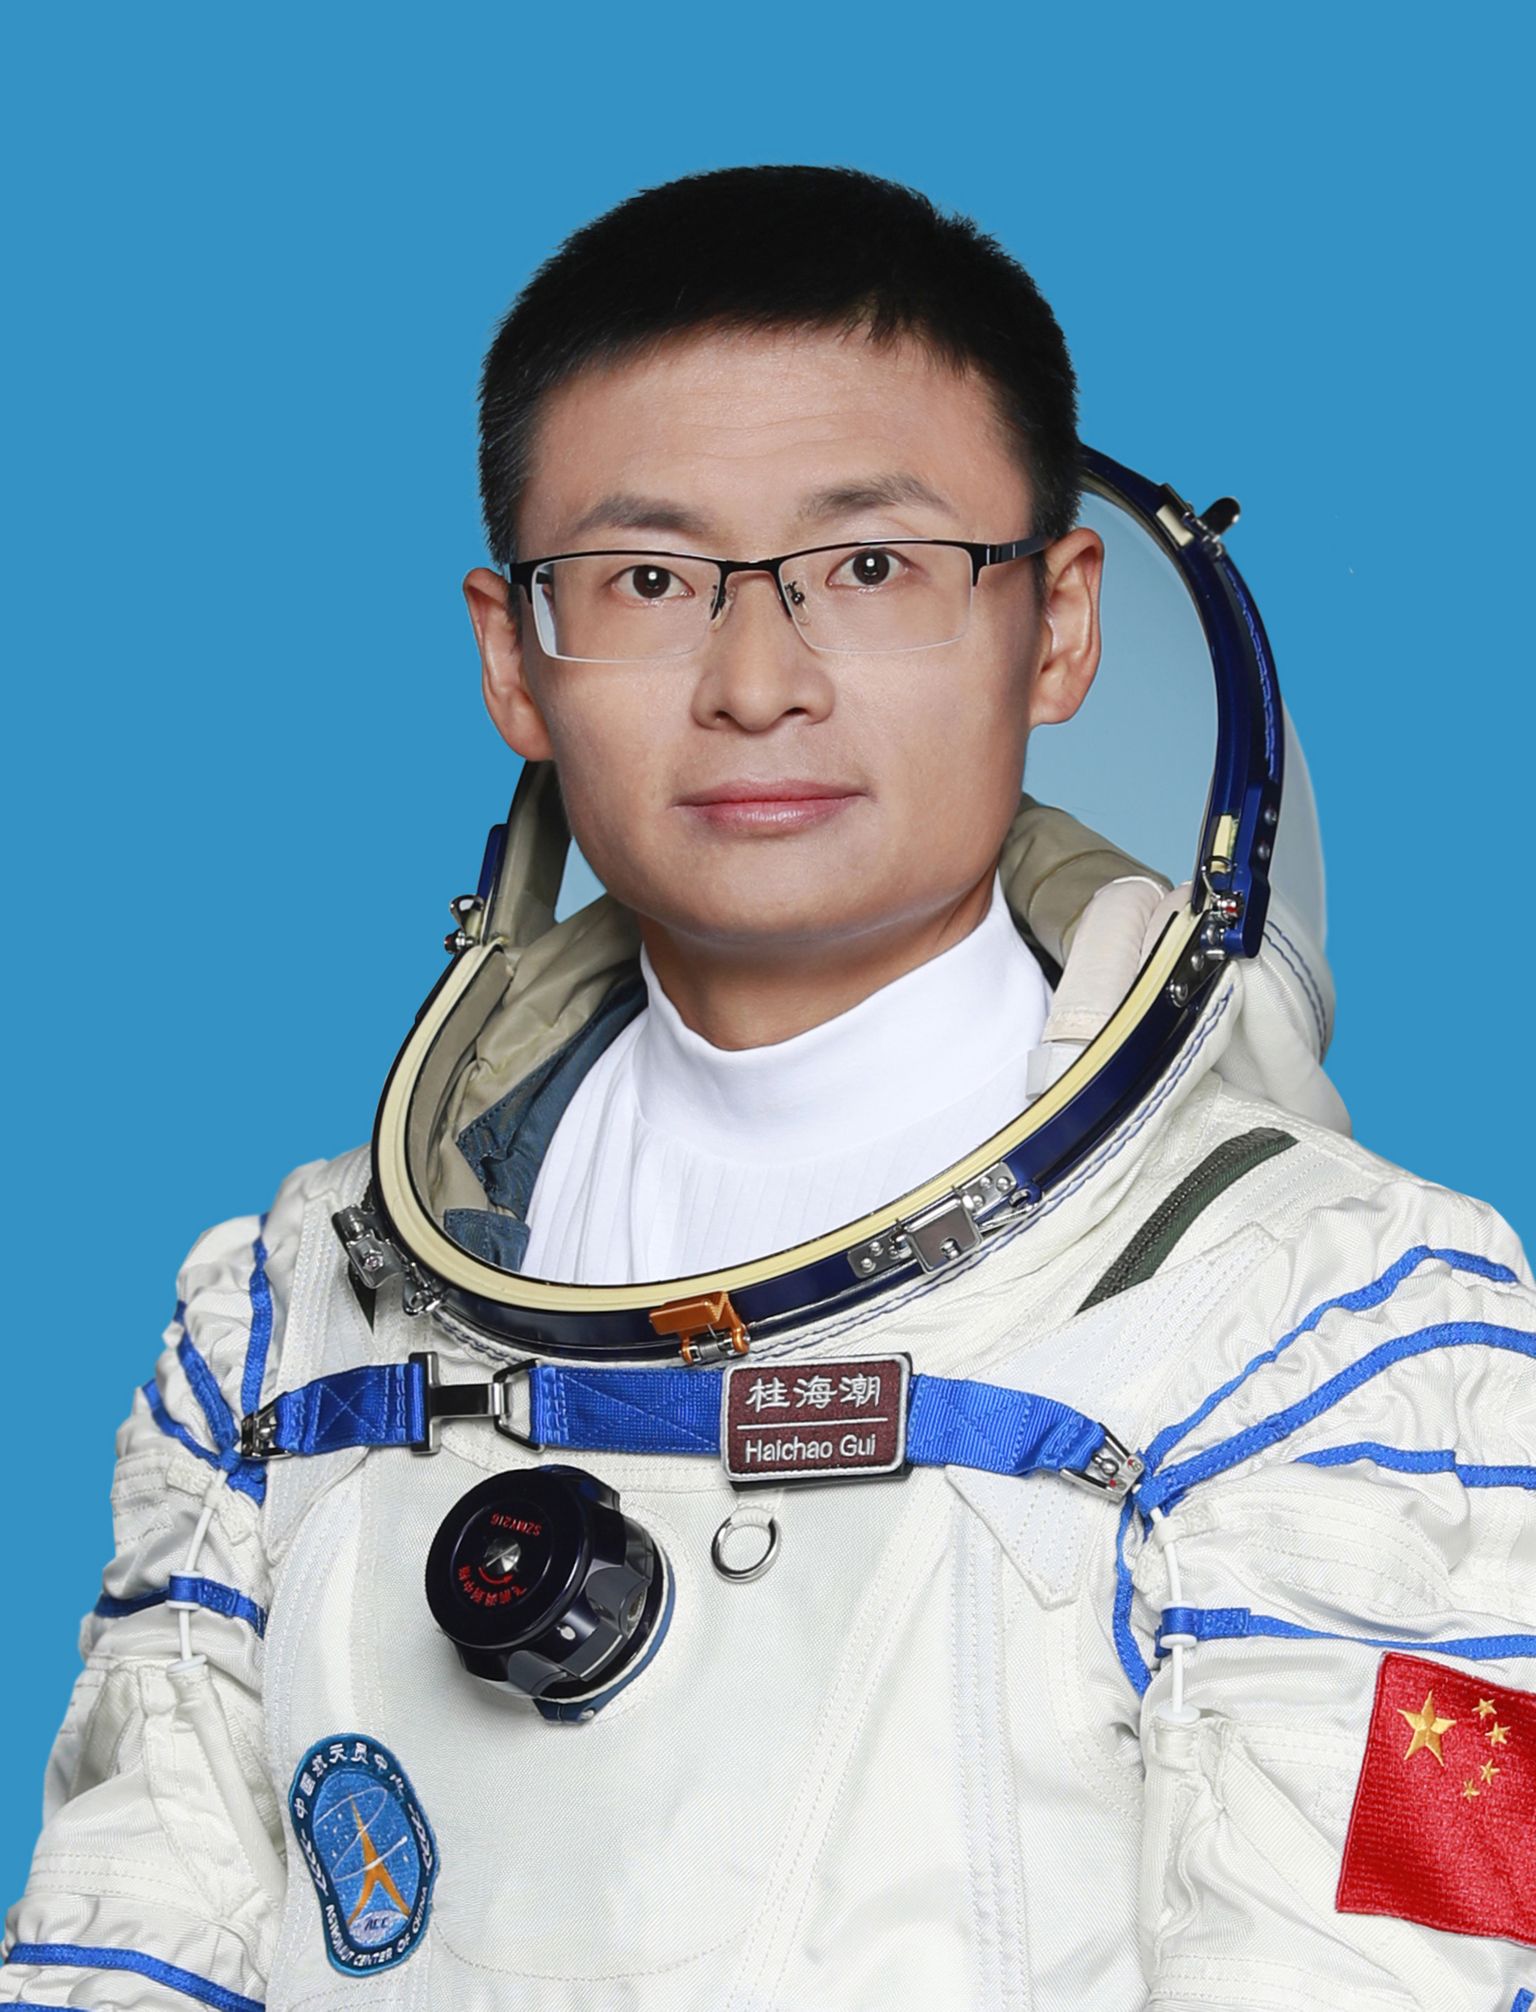 Taikonaudiskafandris professor Gui Haichao, kellest saab Hiina esimene tsiviilisik kosmoses.